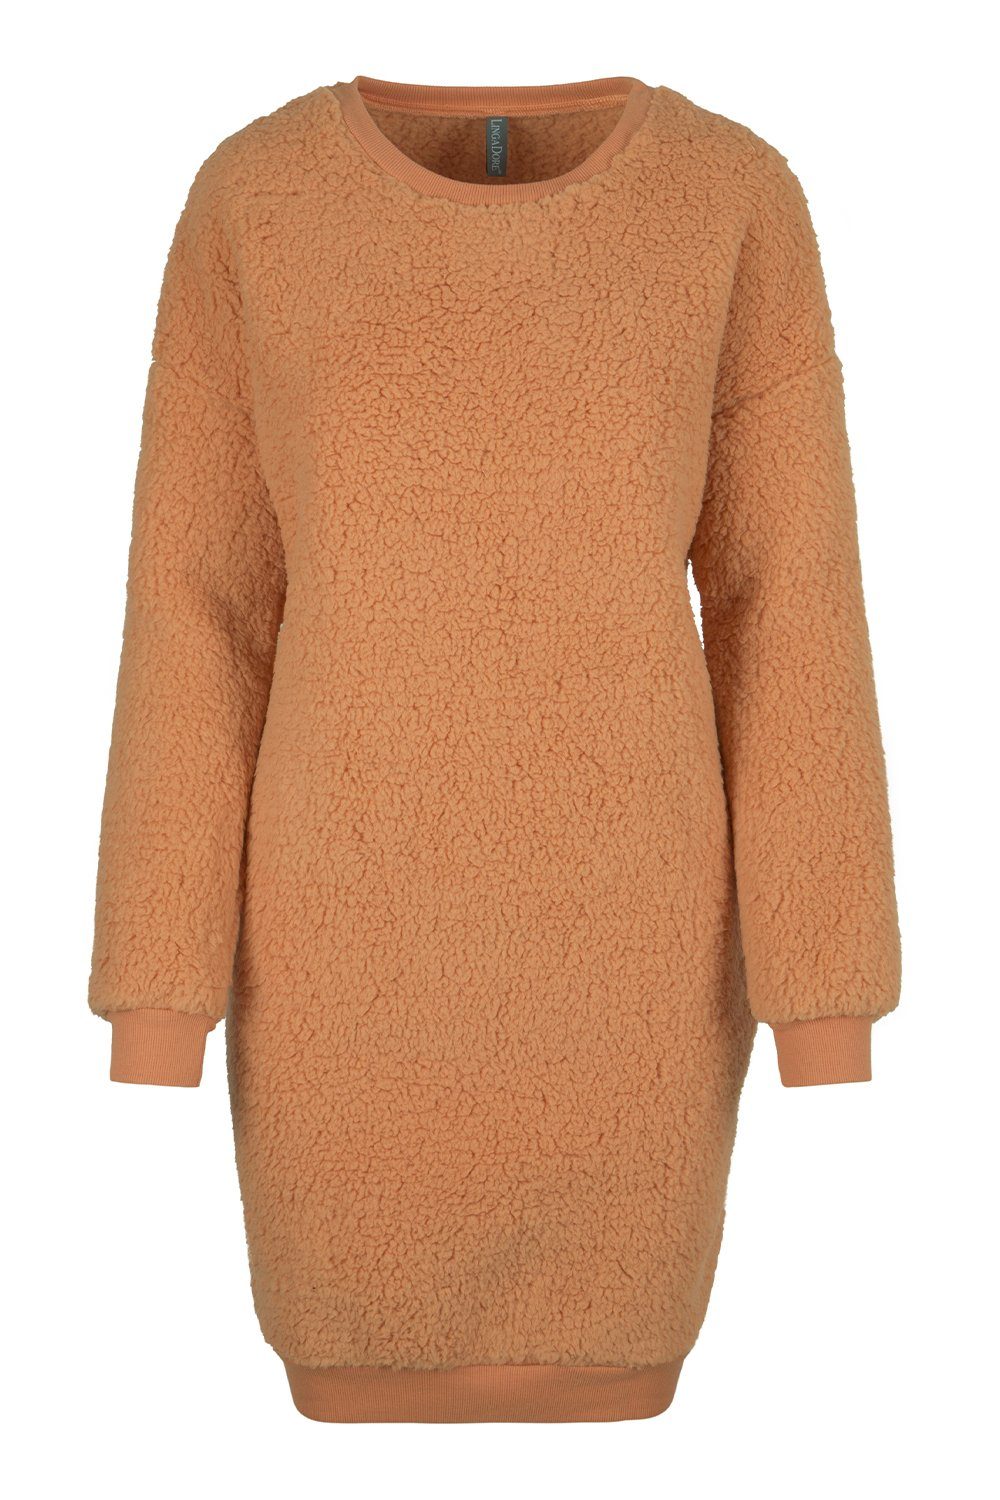 LingaDore Unterkleid Fluffy Kleid 6320 toast | Unterkleider